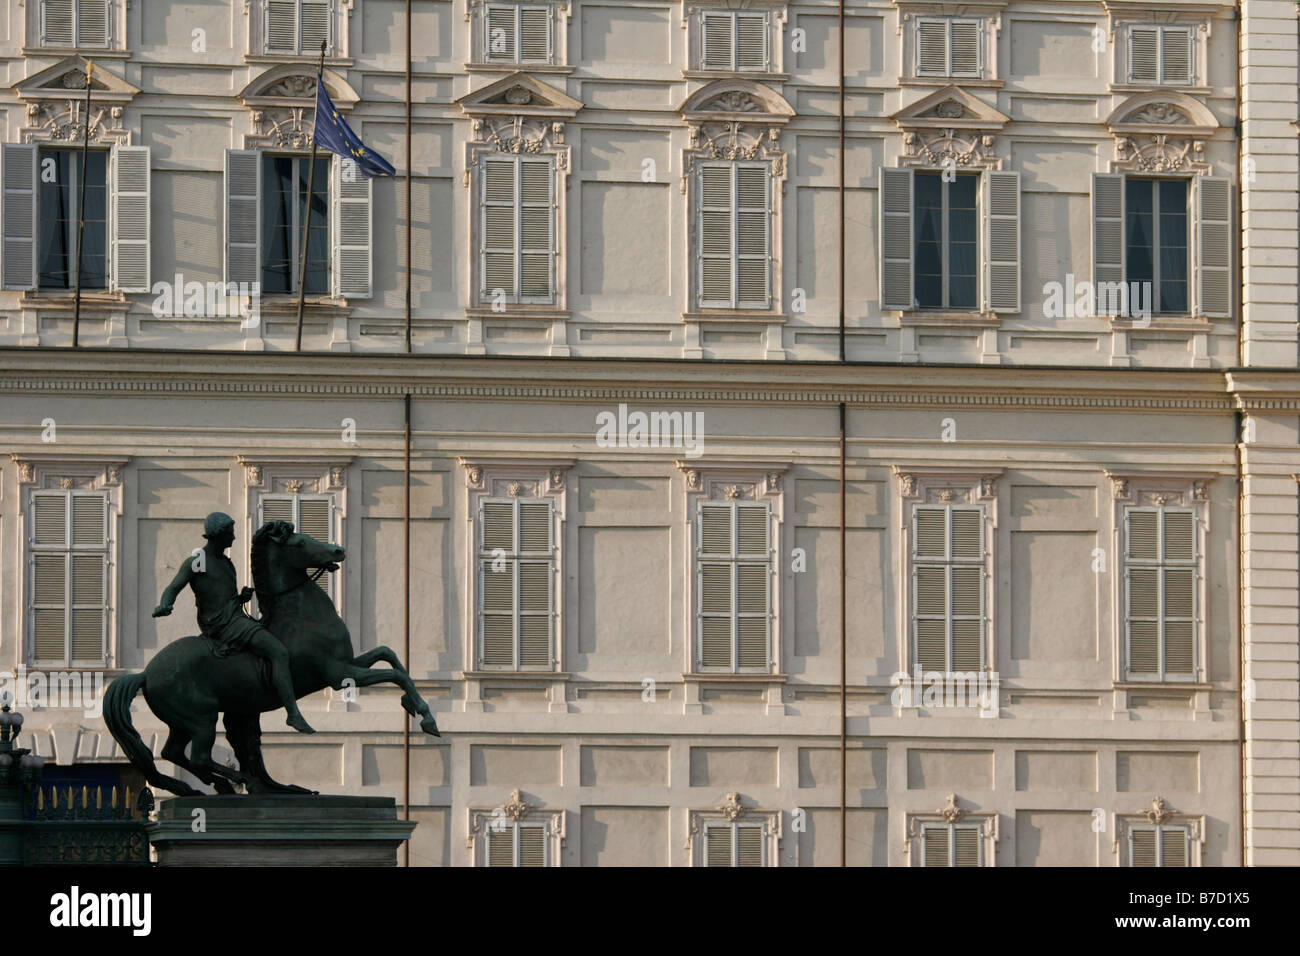 Il Palazzo Reale di Torino e il Palazzo Reale di Casa Savoia, mitologia greca e romana, ricino, Piazza Castello, Torino, Italia Foto Stock